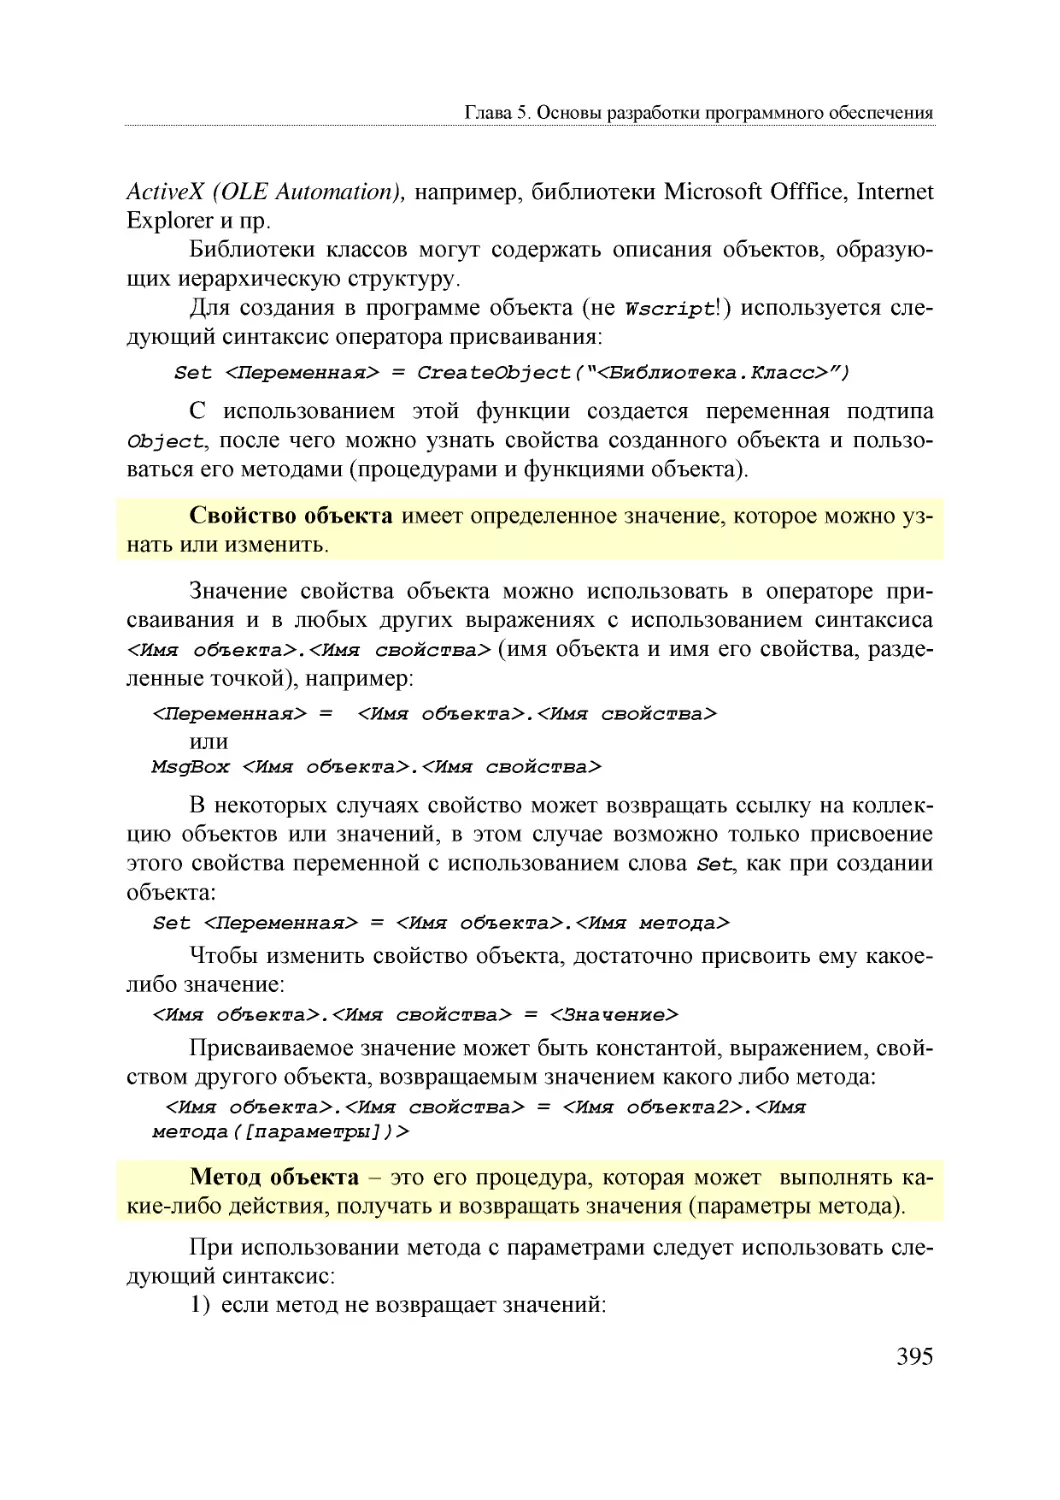 Informatika_Uchebnik_dlya_vuzov_2010 395